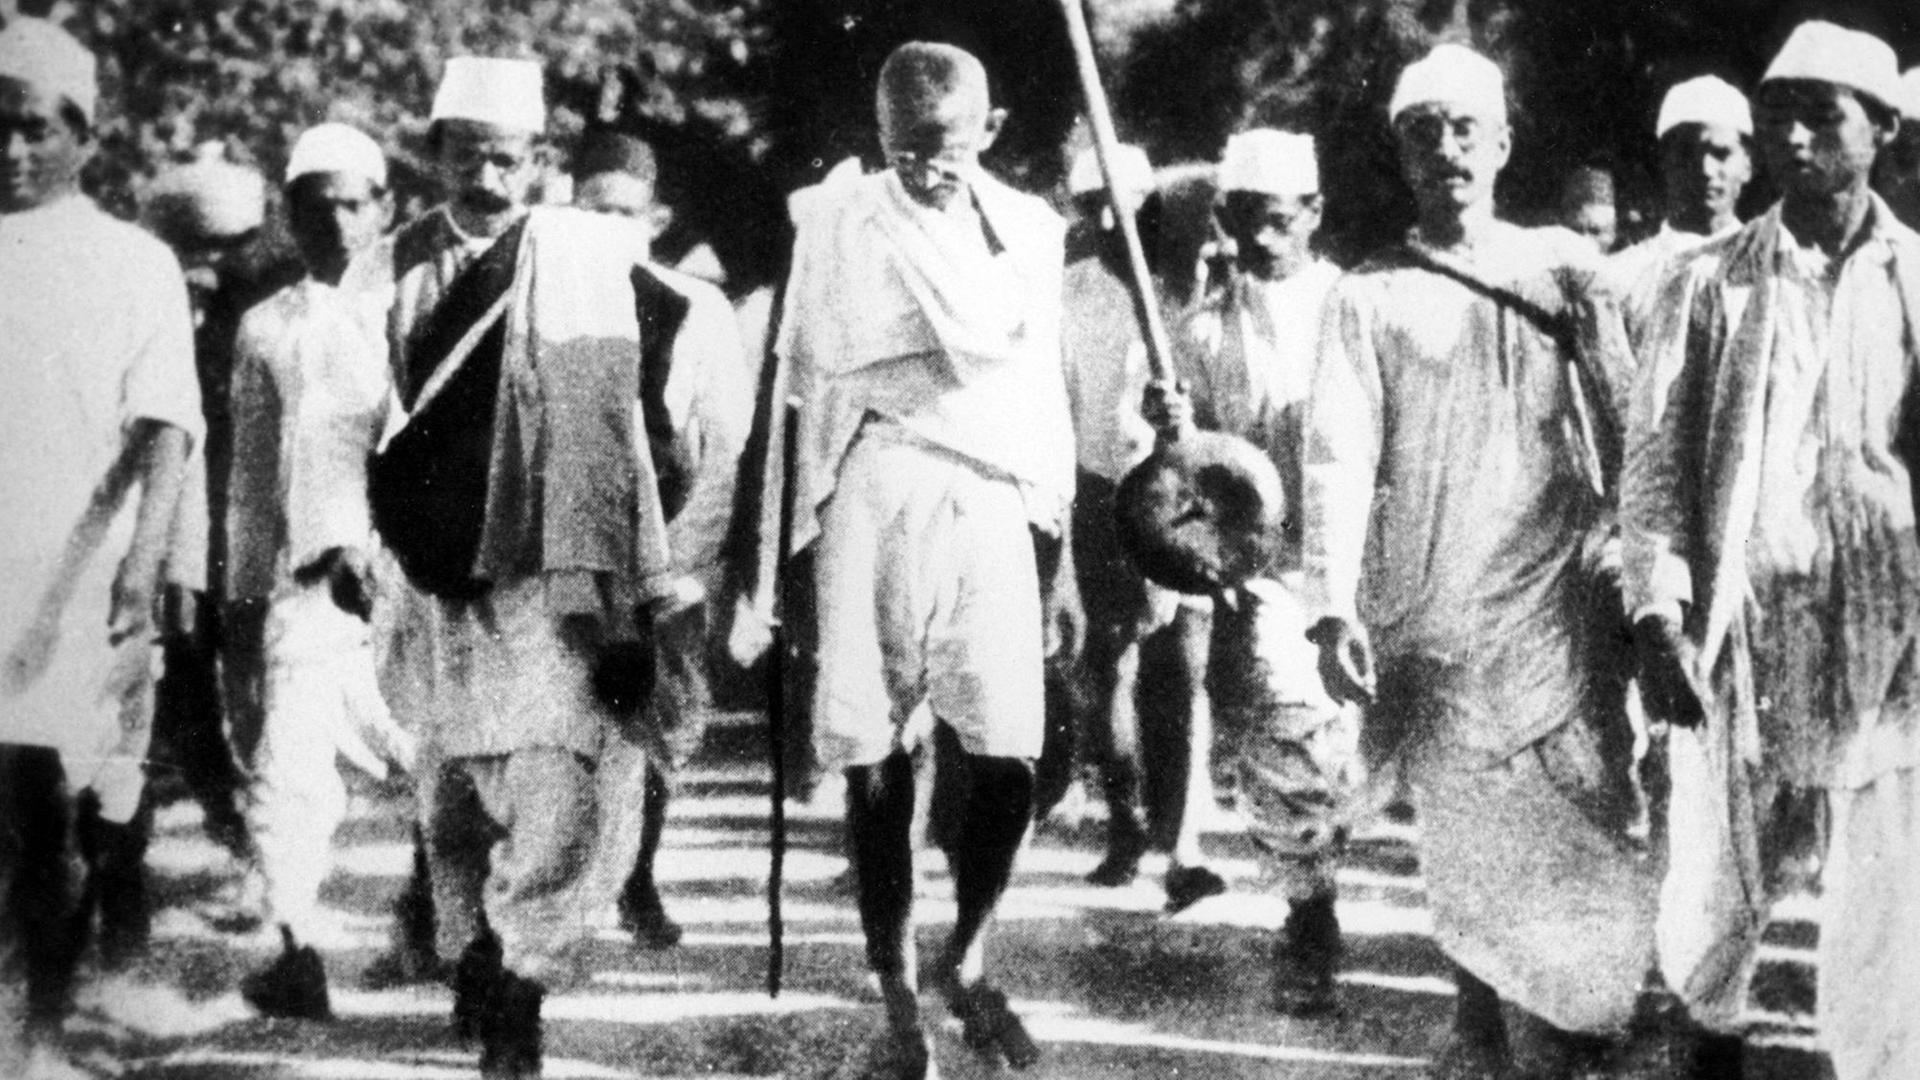 Gandhi mit einer Protestgruppe beim 'Salt March', 1930. Der Marsch war ein wichtiger Teil der indischen Unabhängigkeitsbewegung. Protest gegen das britische Salz-Monopol in der Kolonie Indien.